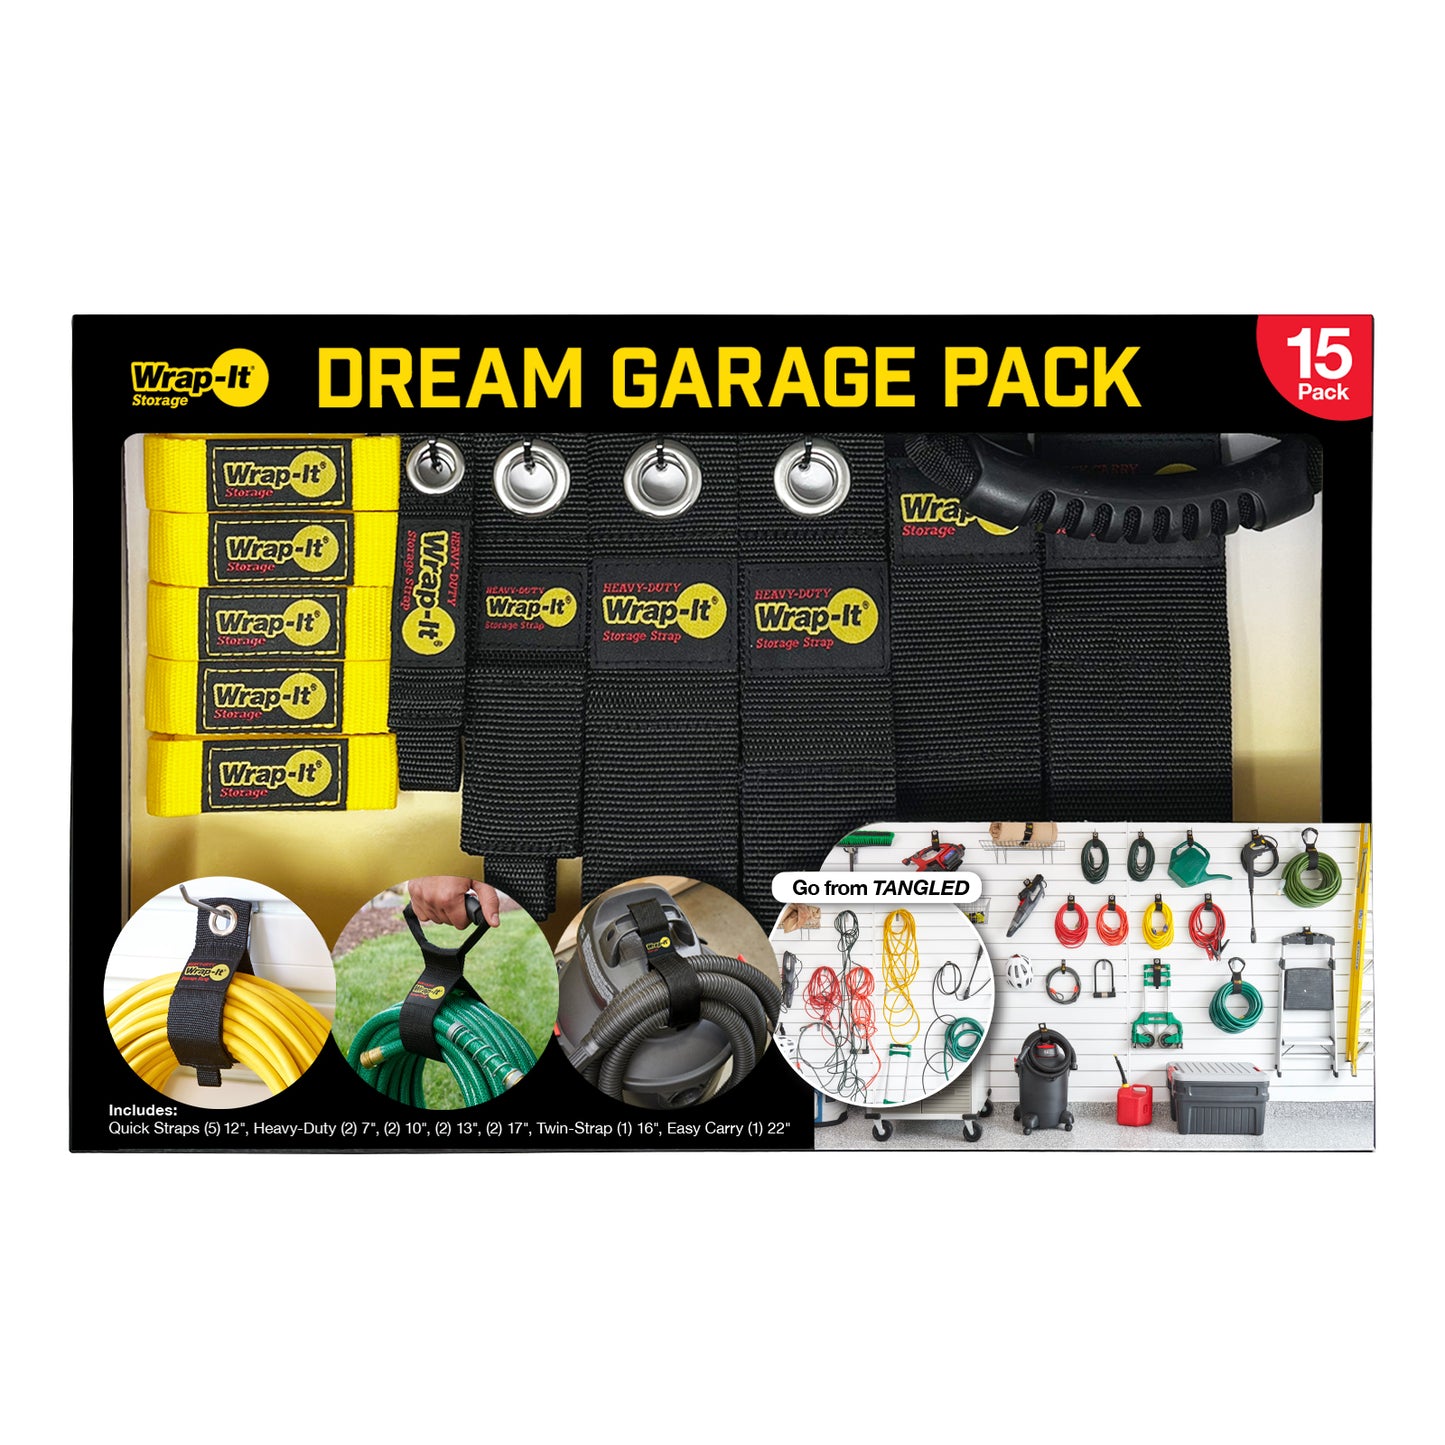 Dream Garage Pack